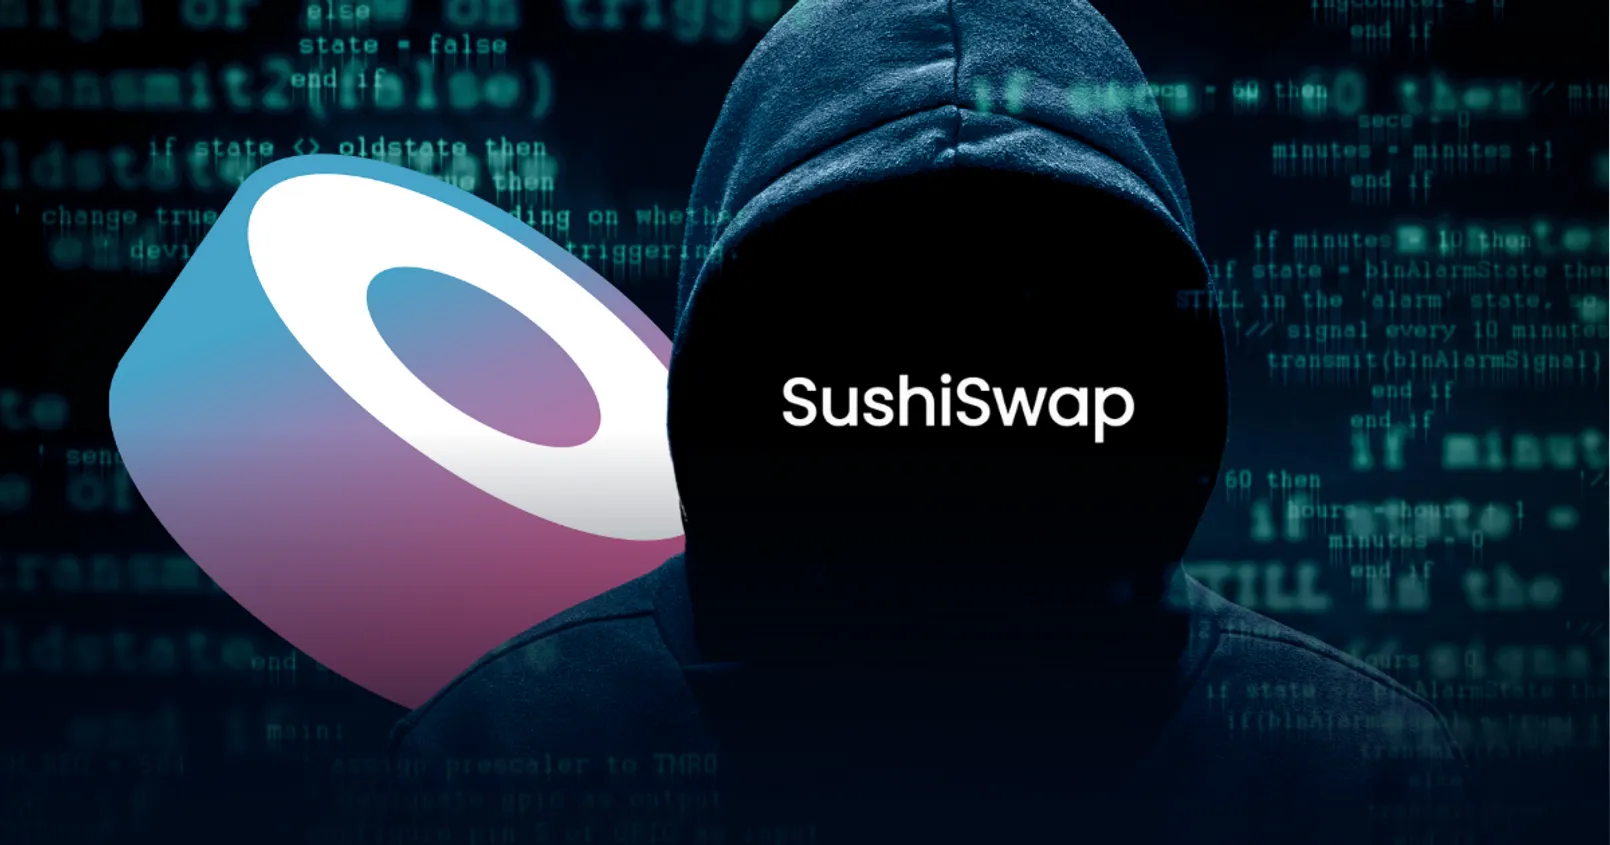 Sushi Swap ถูกแฮกเกอร์ขโมยเงินไปกว่า 3.3 ล้านดอลลาร์